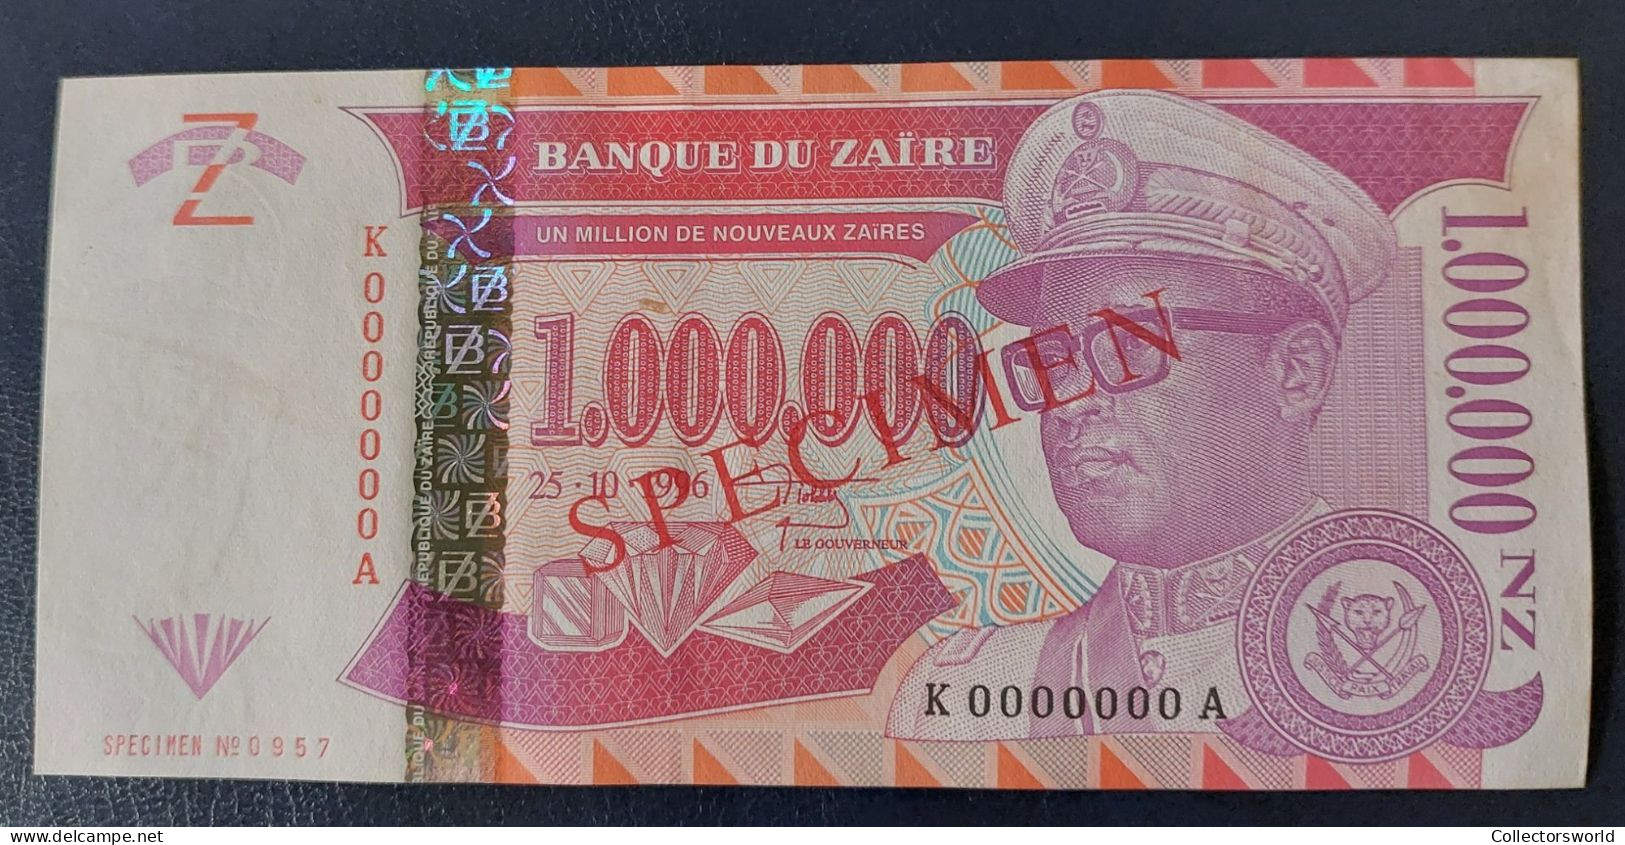 Zaire 1.000.000 New Zaires SPECIMEN P79S 1996 UNC - Zaïre